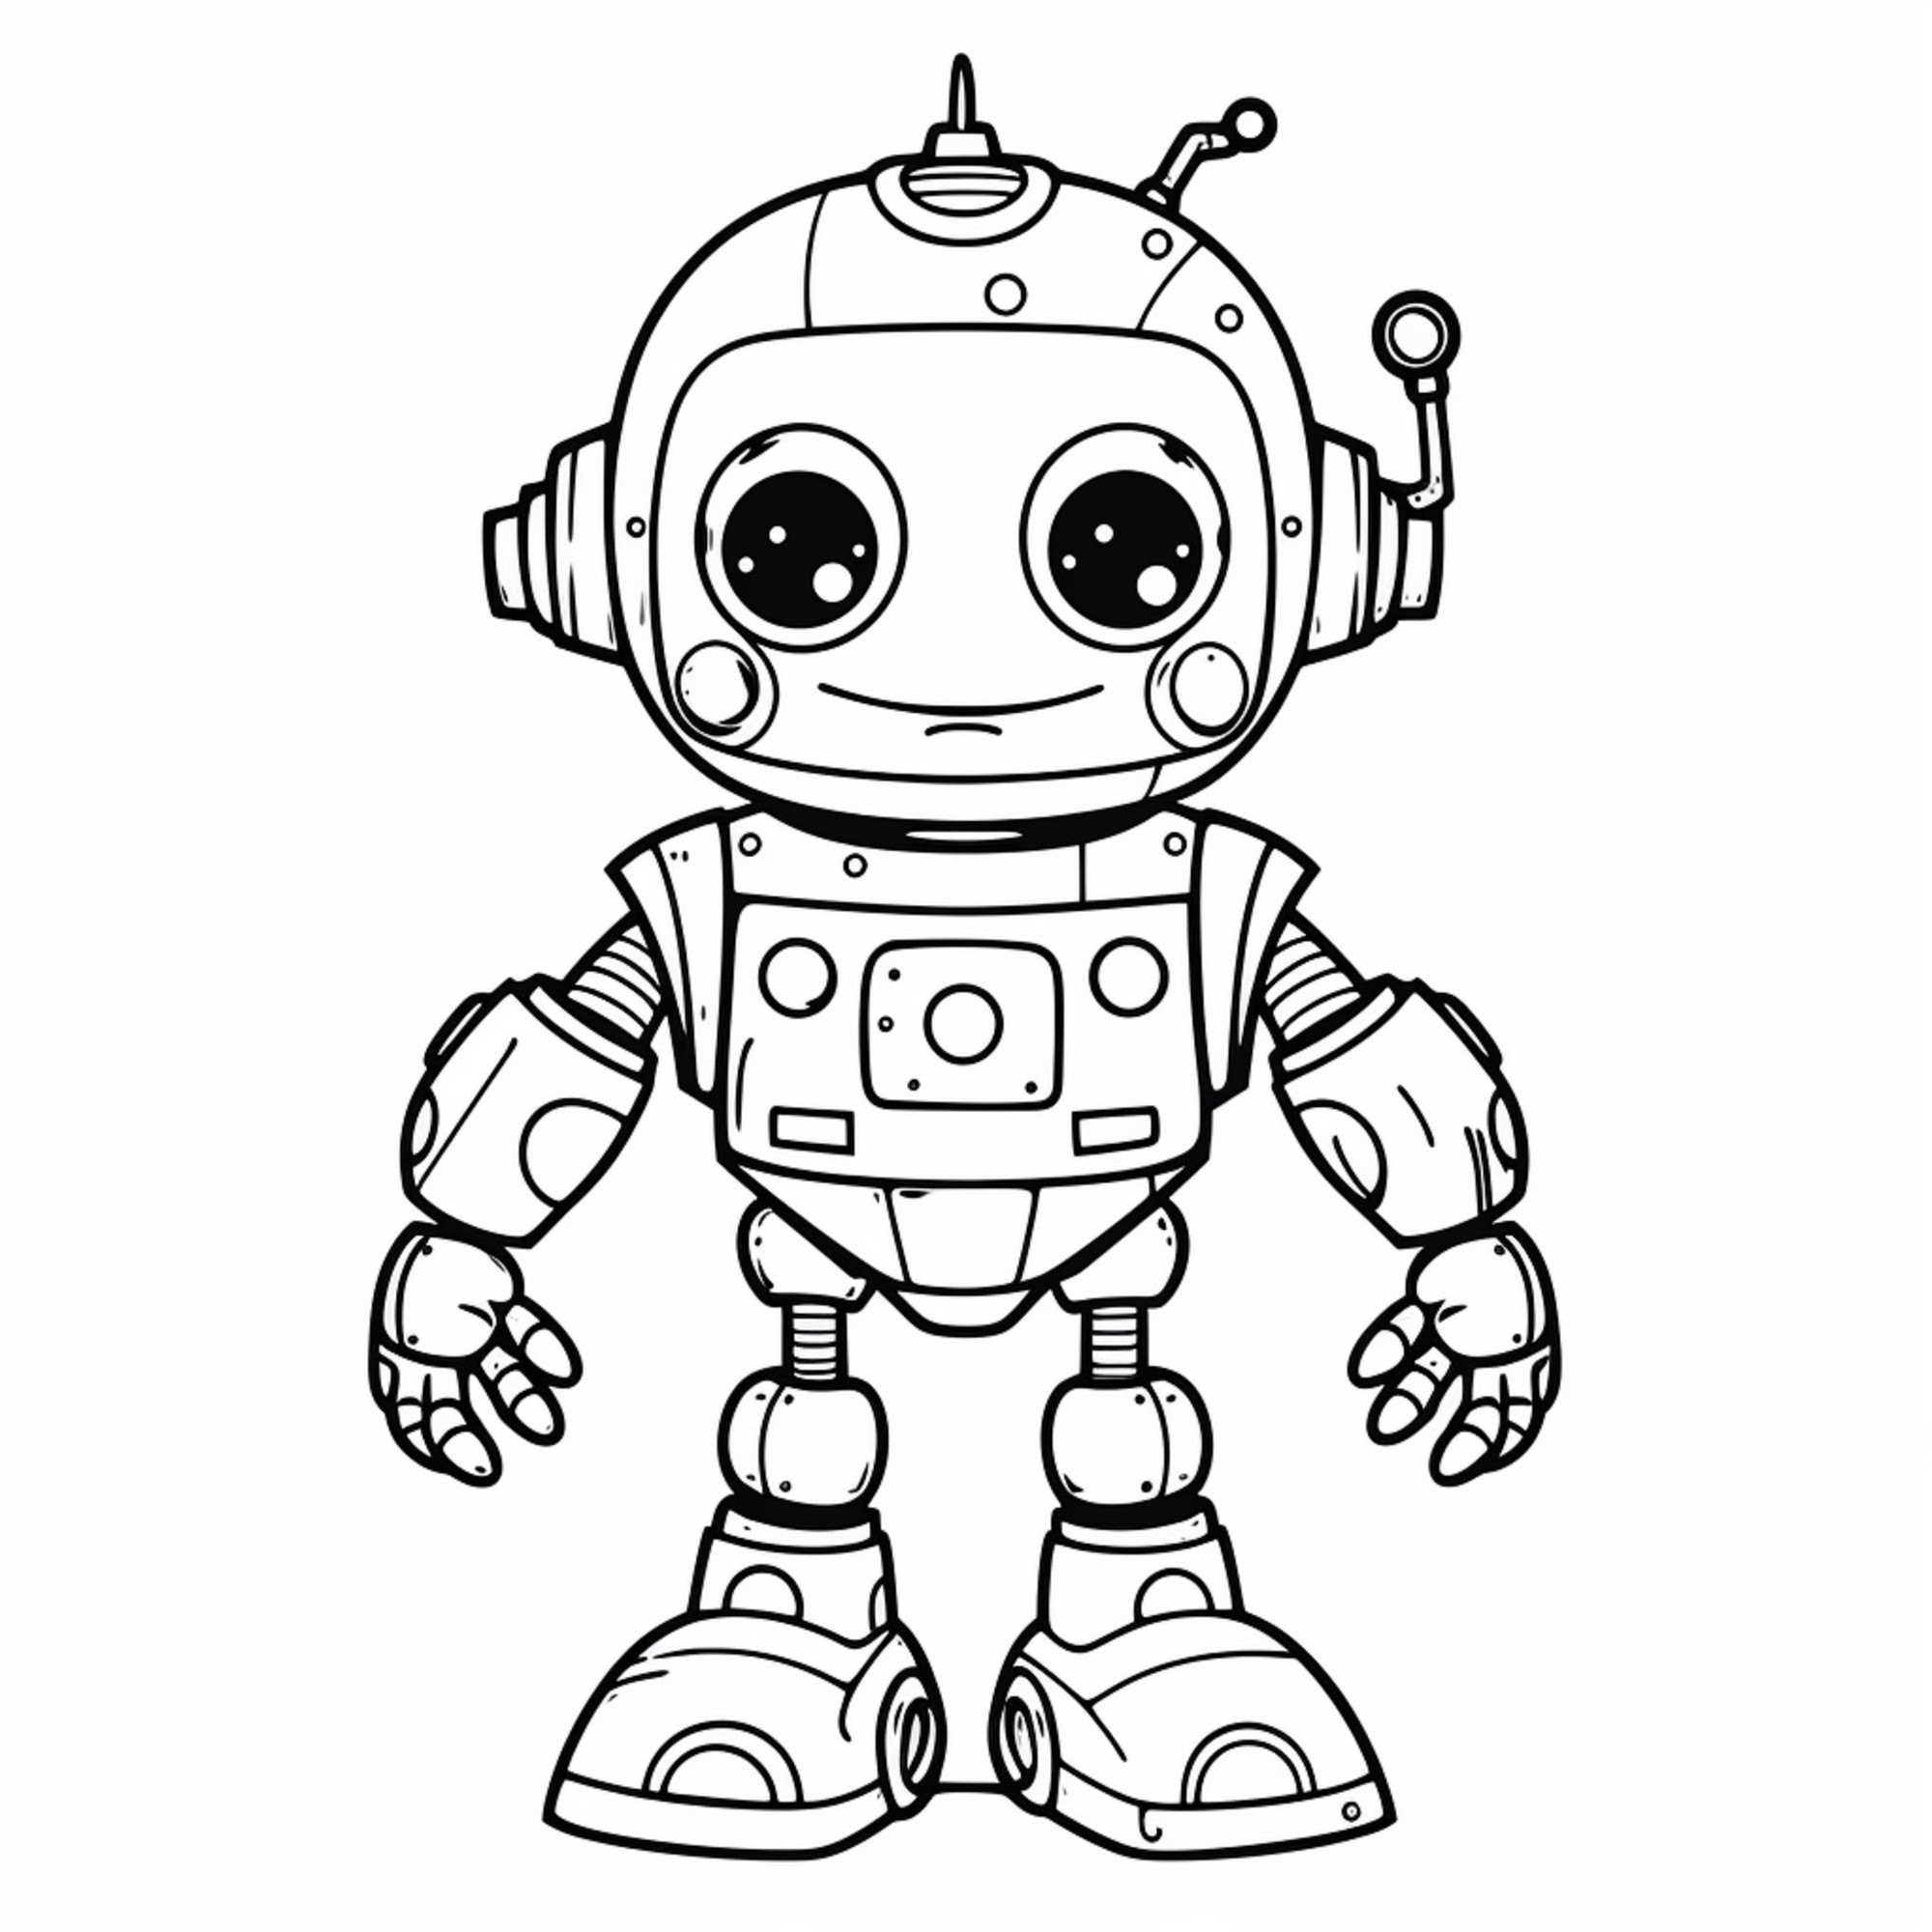 Раскраска для детей: веселый робот с руками и добрым взглядом